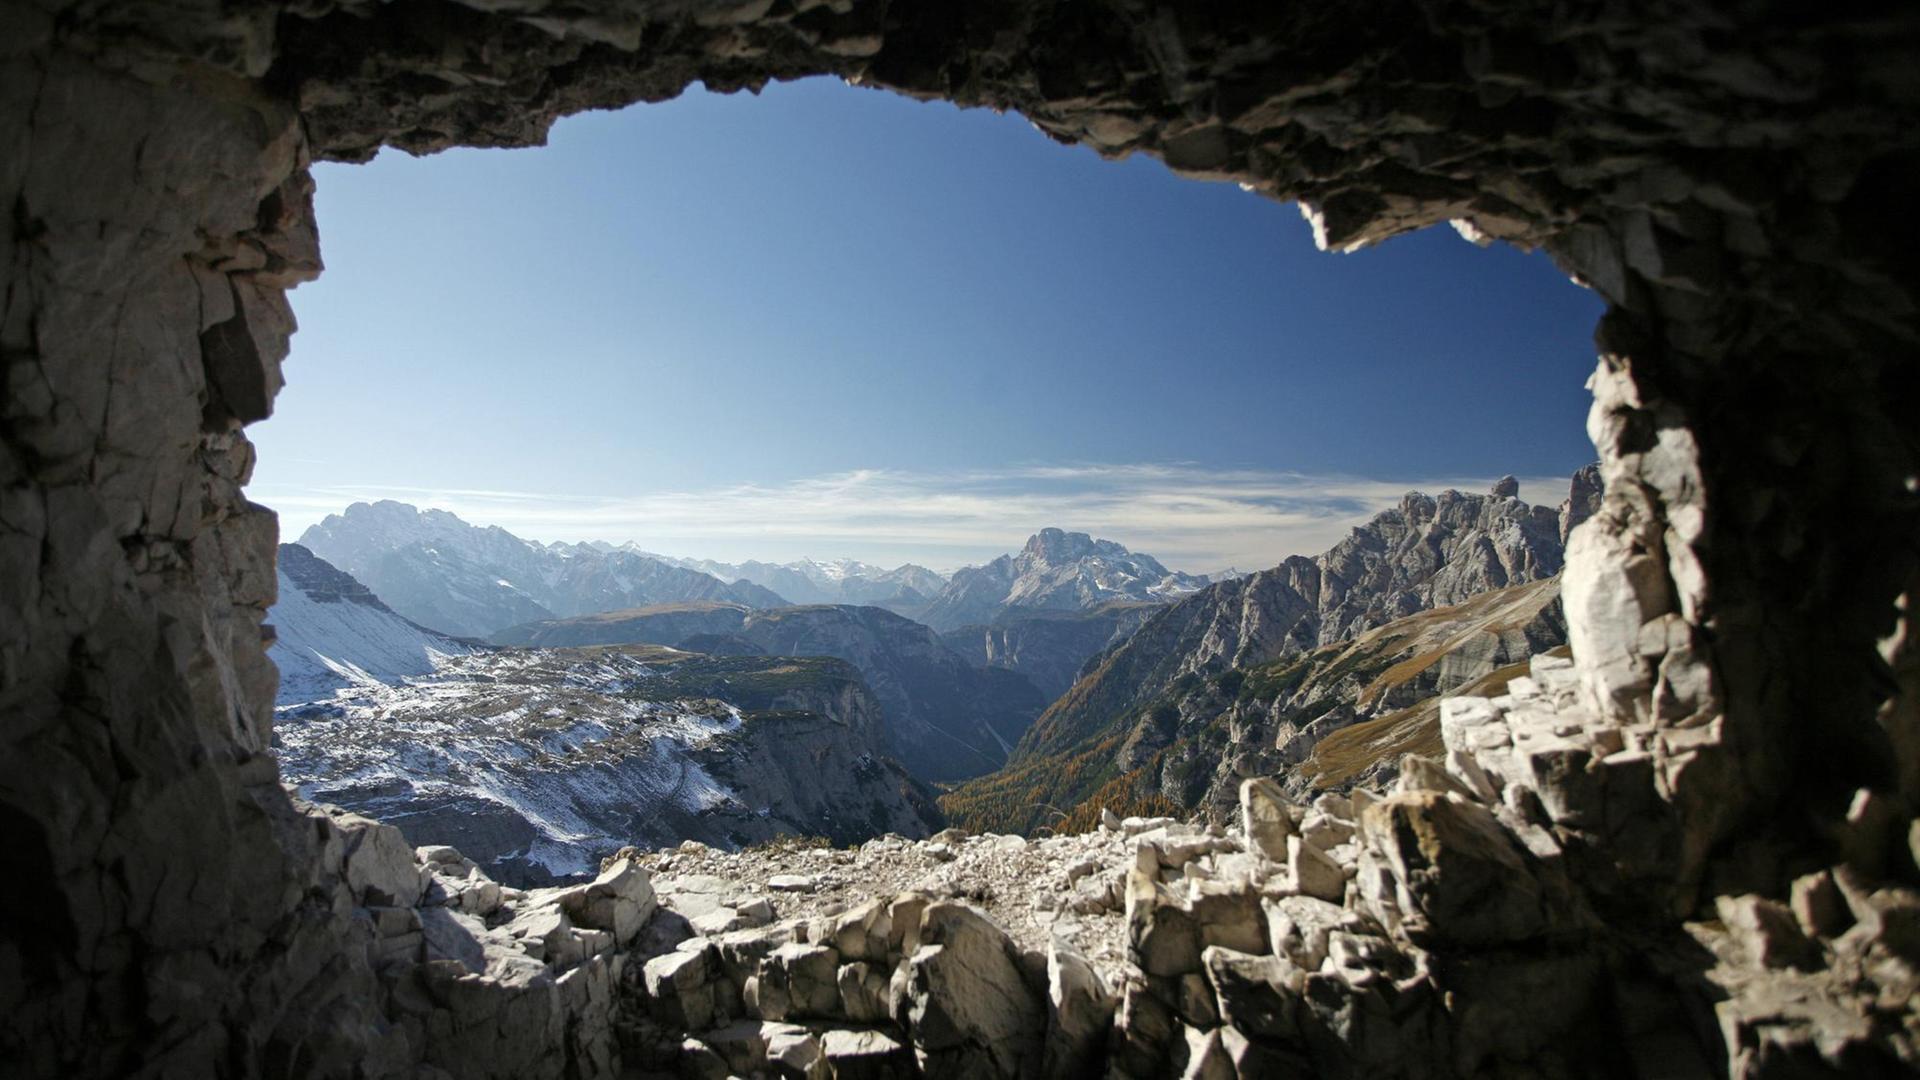 Blick aus einem Stollen aus dem Ersten Weltkrieg im Gestein des Paternkofel (Dreizinnen) in den Dolomiten, aufgenommen am 12.10.2008.